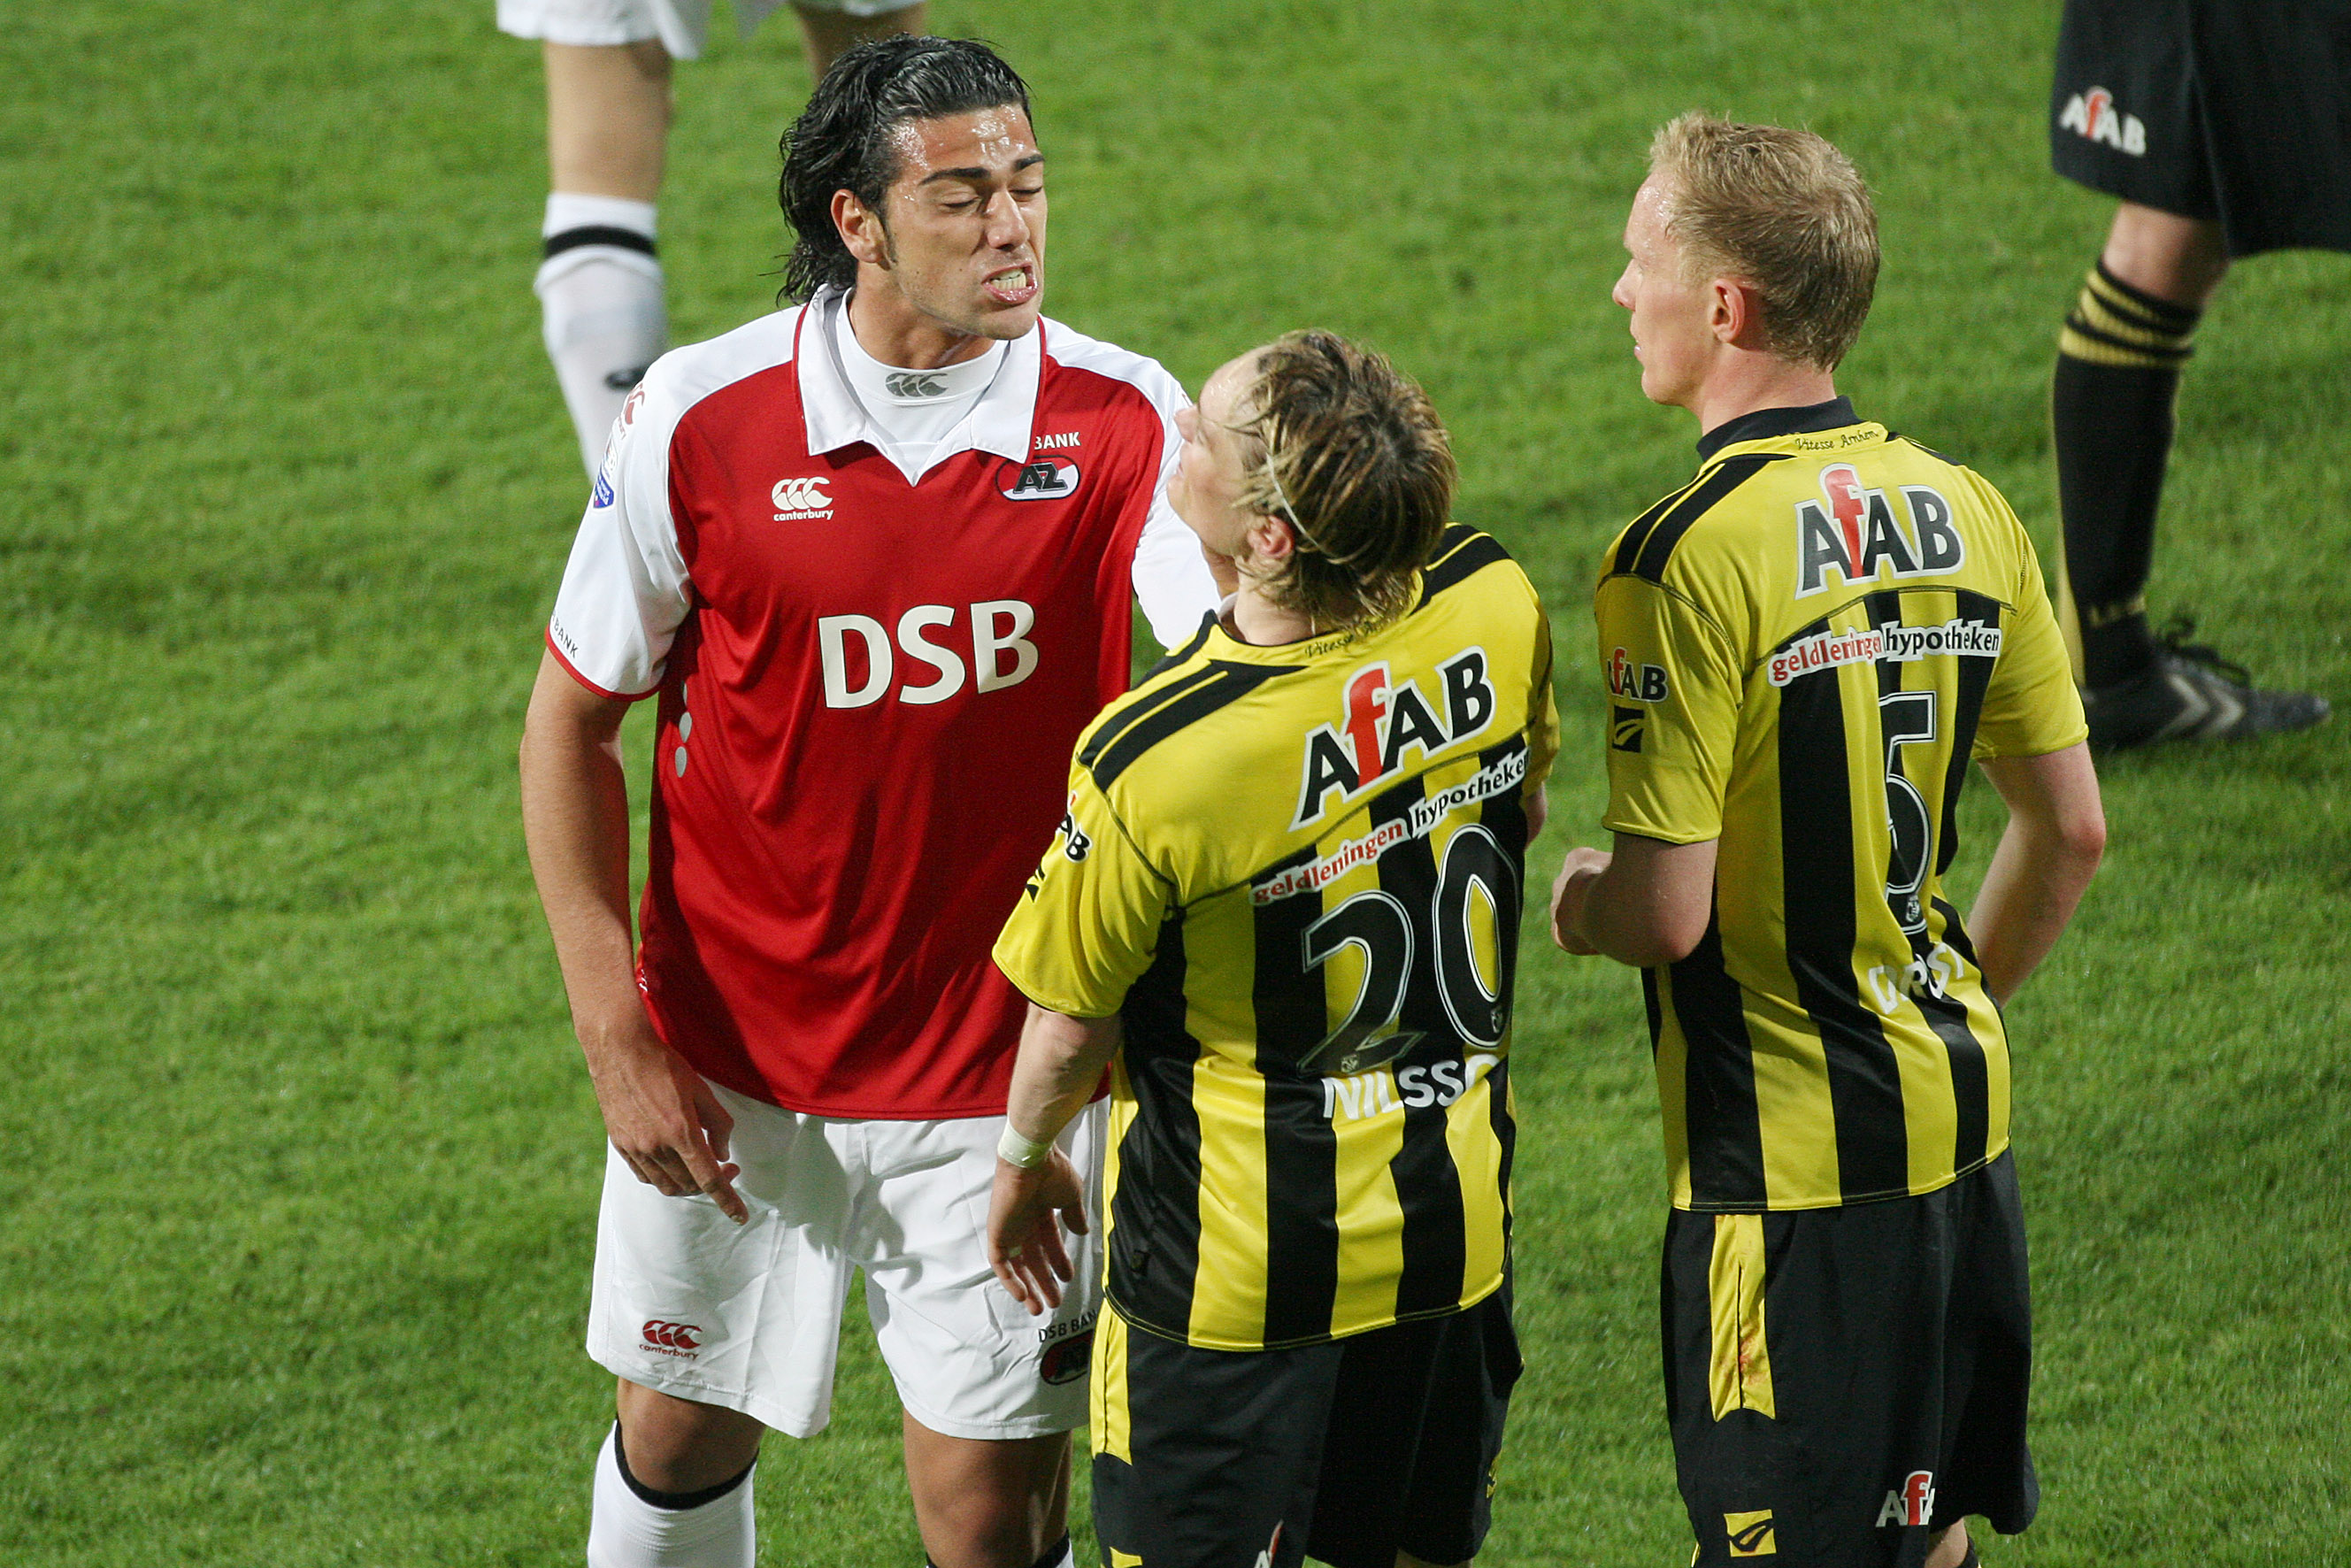 Graziano Pelle, AZ Alkmaar, ger Lasse Nillson en örfil. Här spelar han för Vitesse.